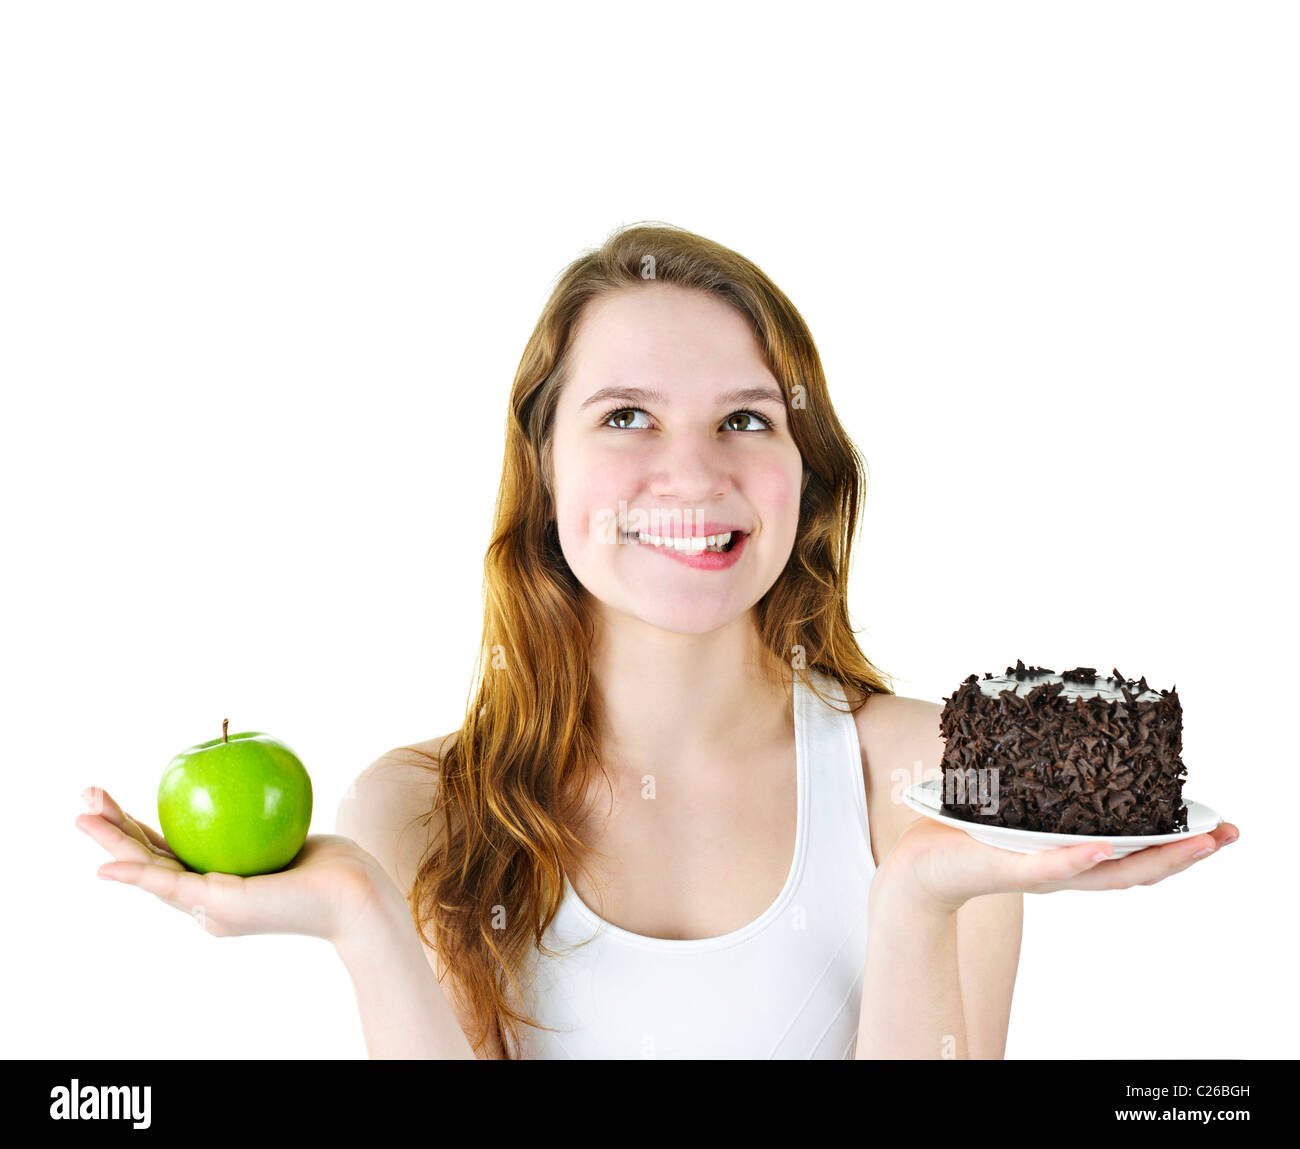 Versucht junge Frau mit Apfel und Schokolade Kuchen, so dass eine Wahl Stockfoto